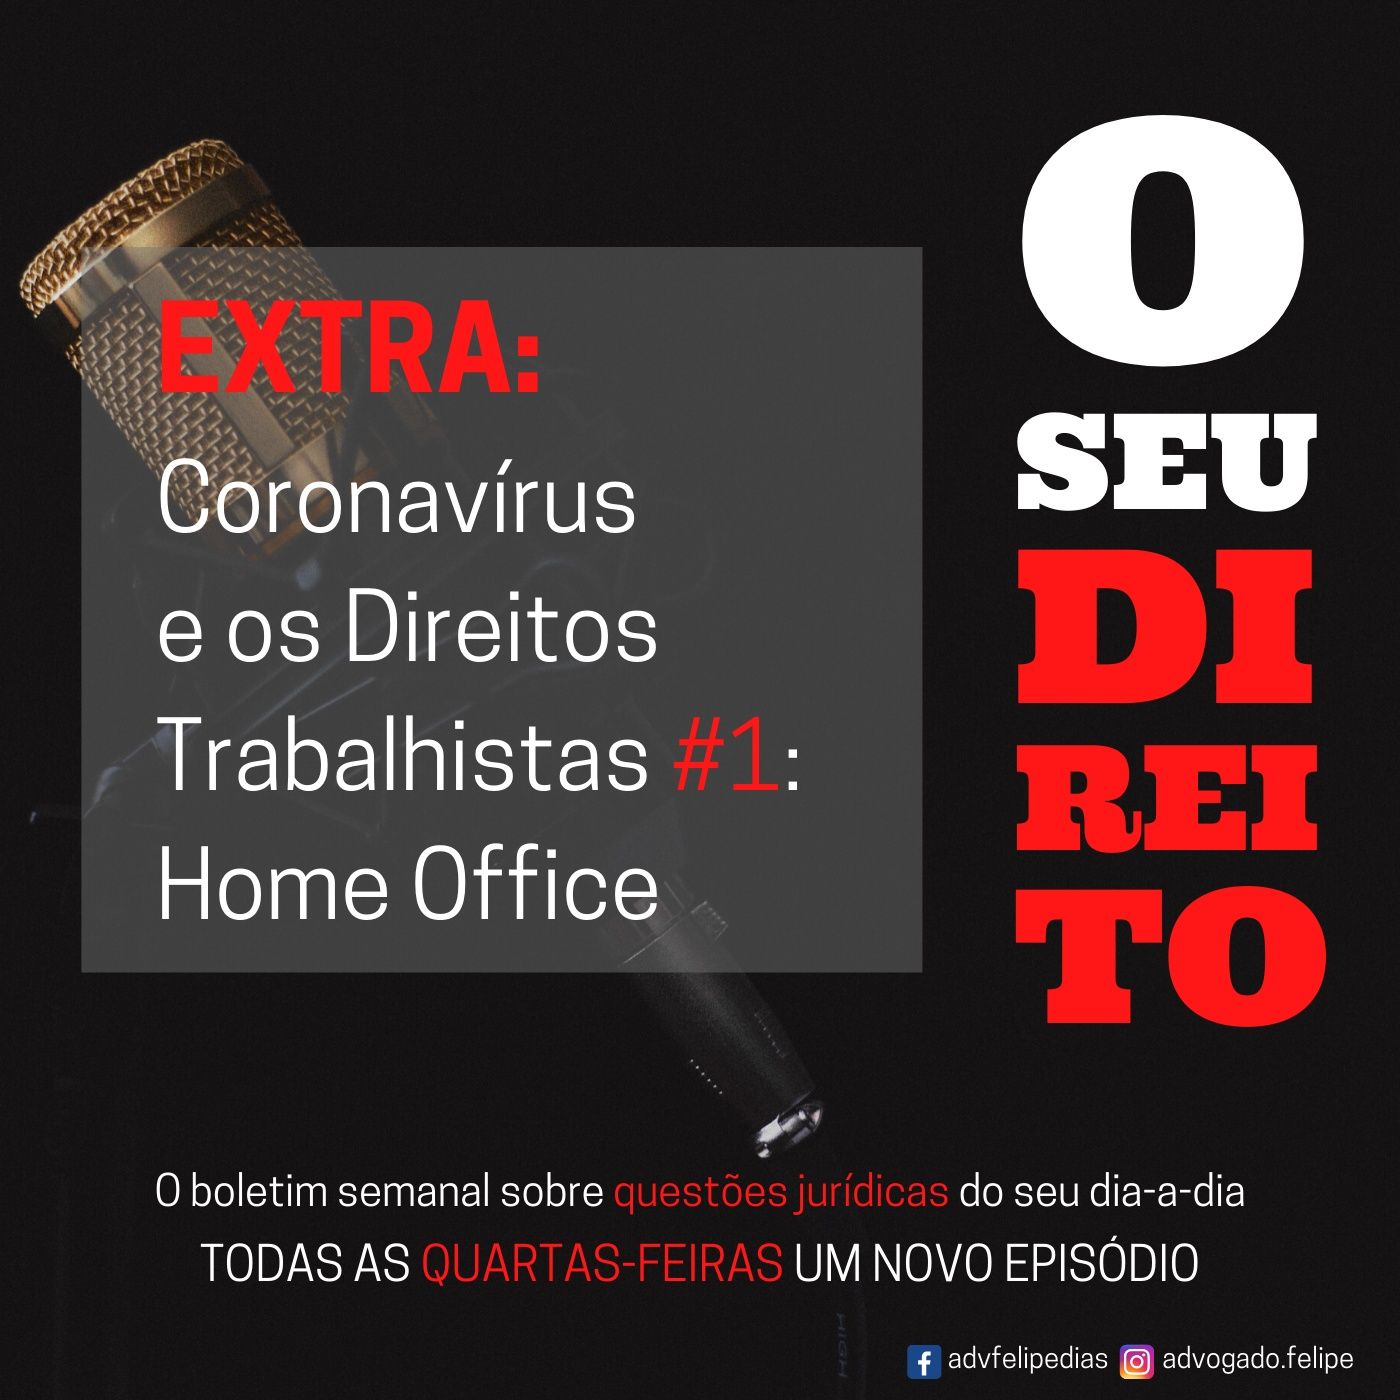 EXTRA - Coronavírus e os Direitos Trabalhistas #1: Home Office